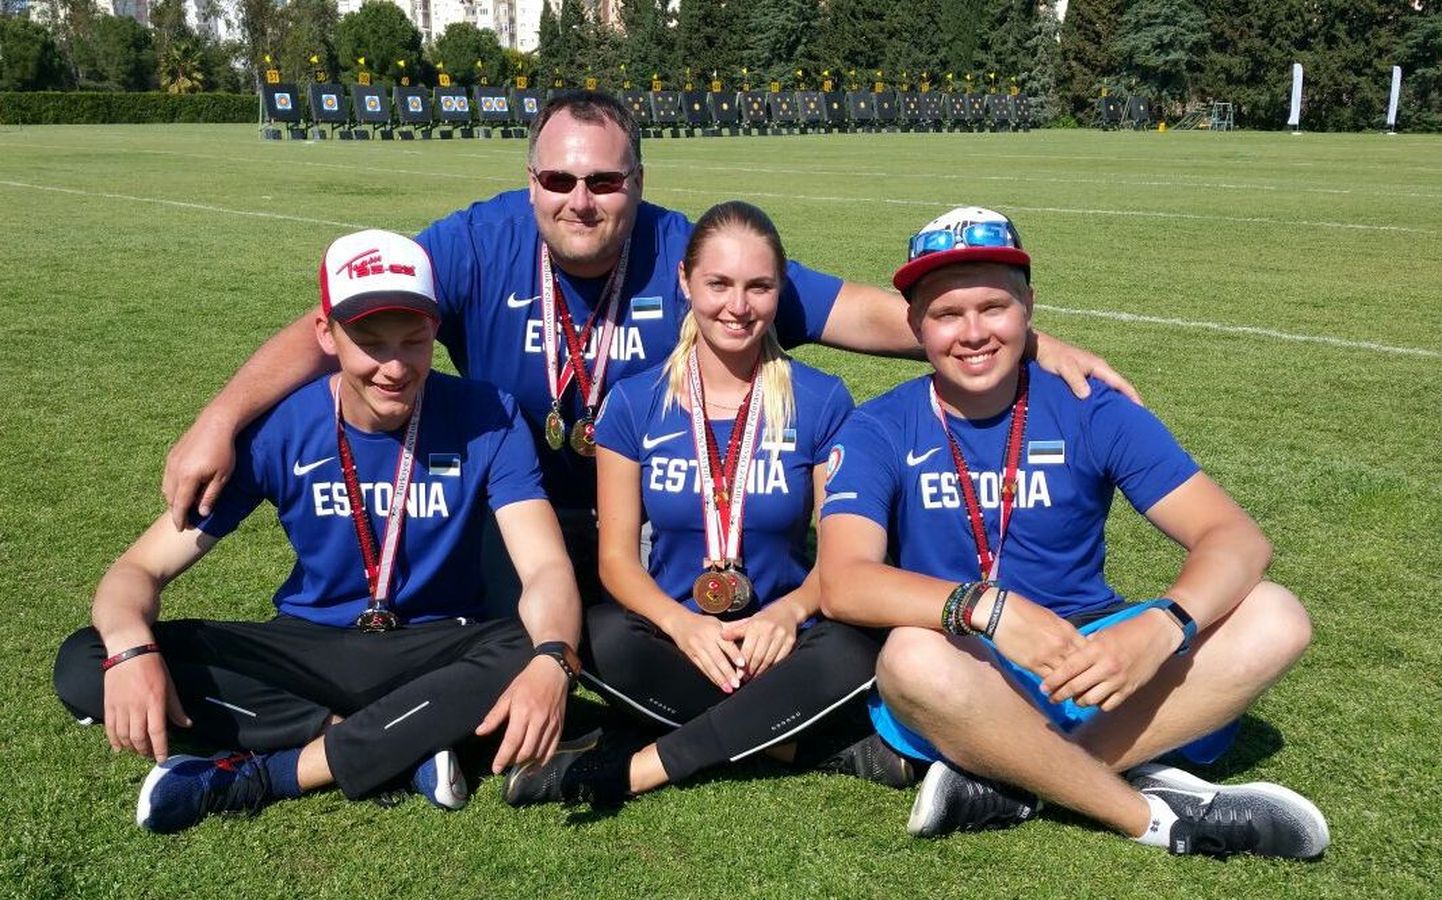 Medalistid Oona, Kaasik, Parnat ja Kivilo.